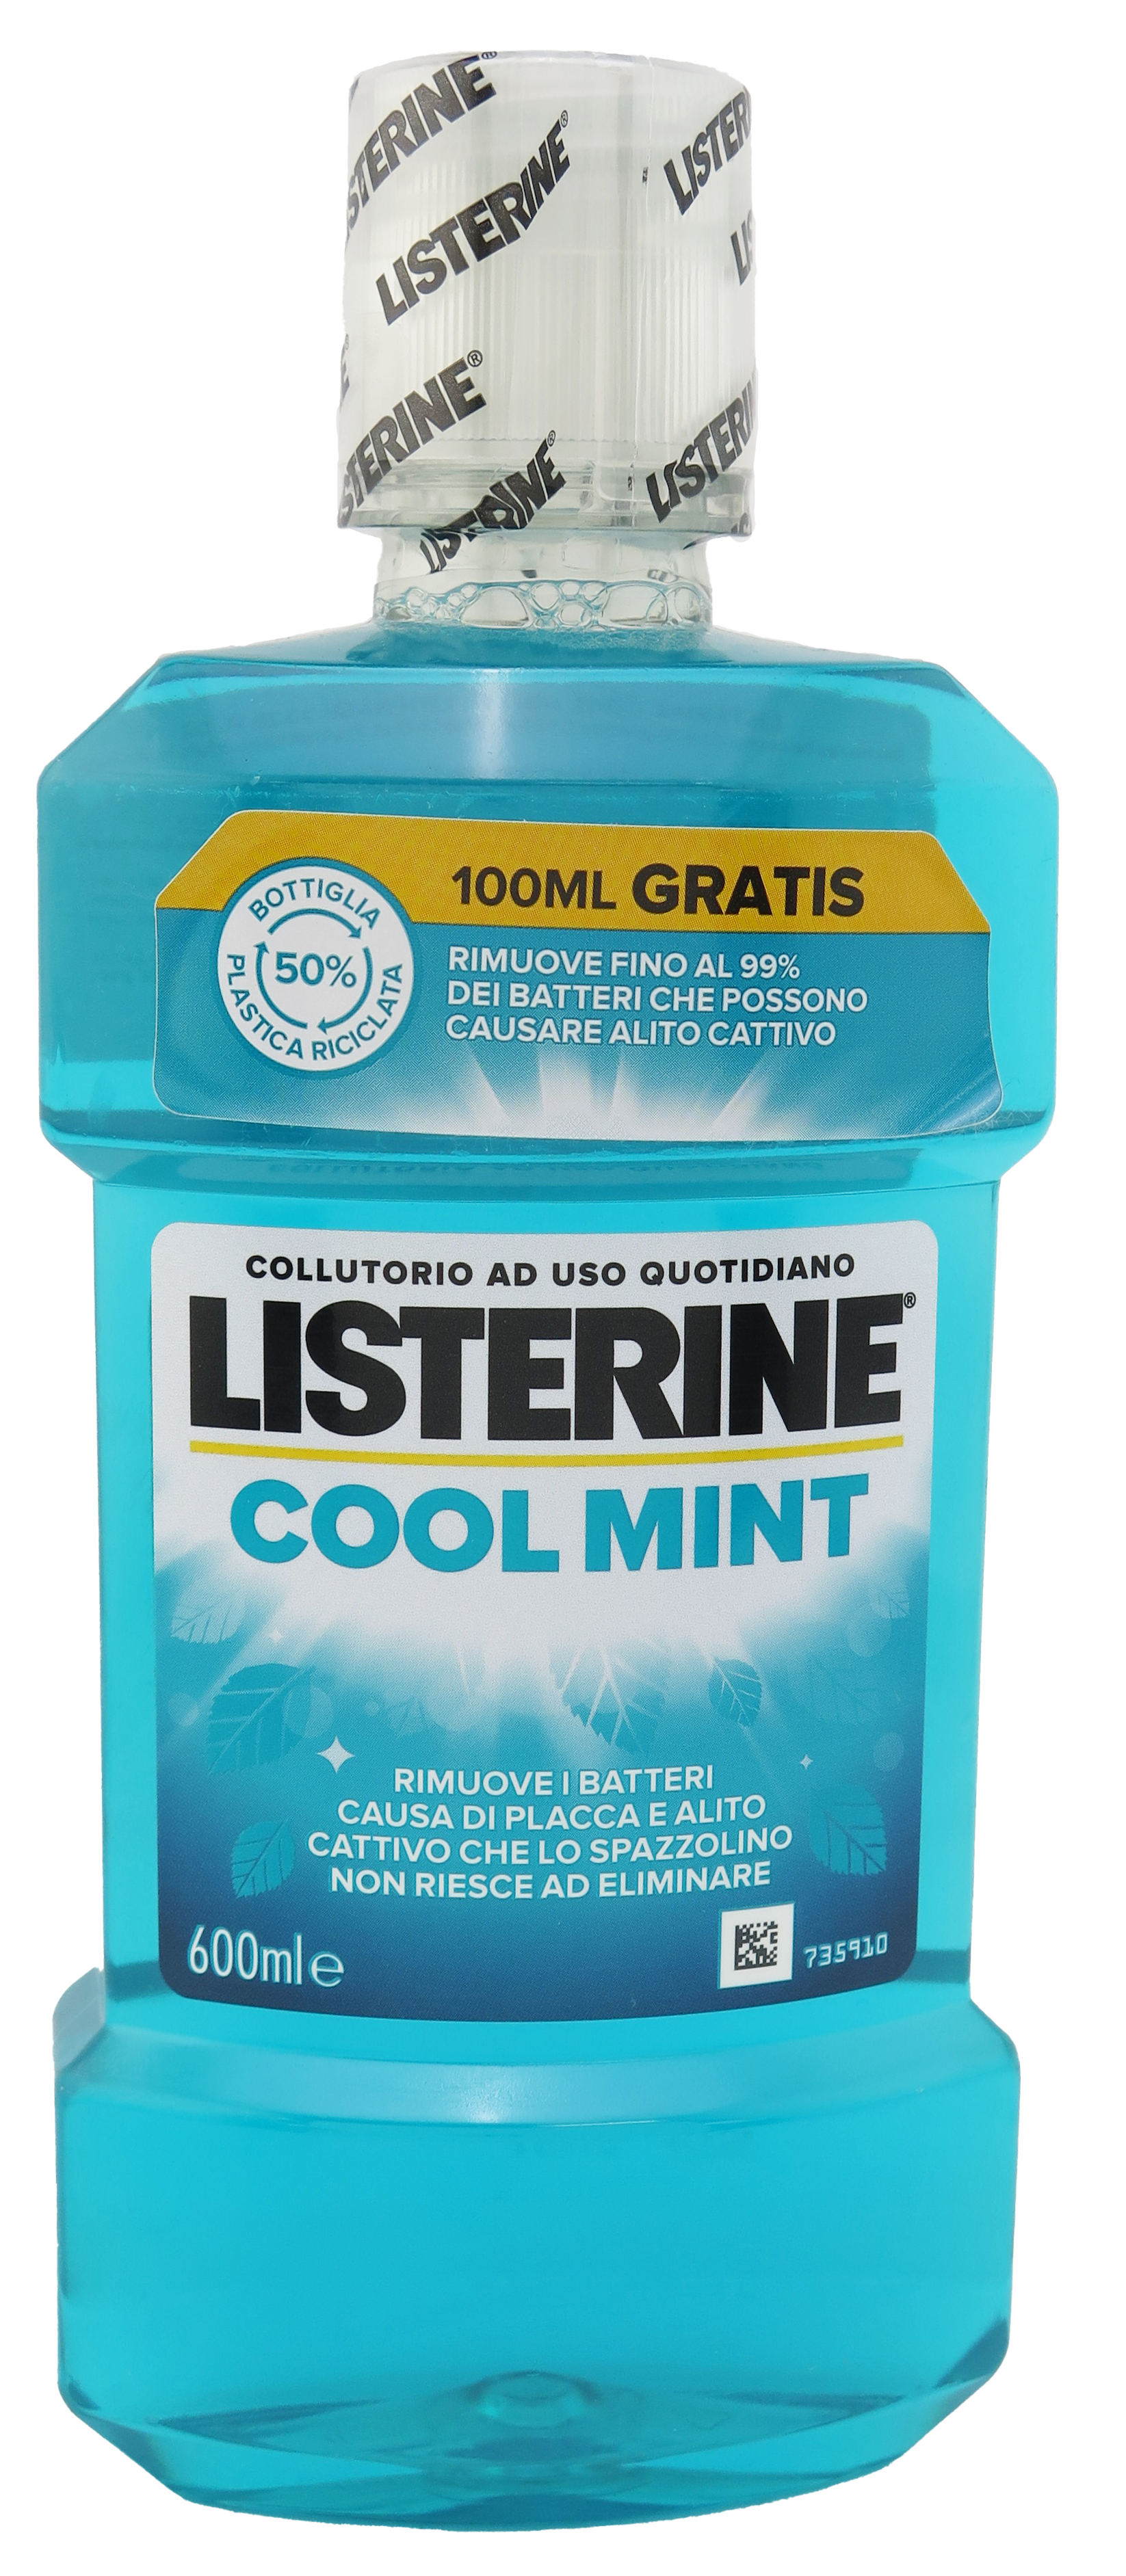 Listerine Coolmint Mouthwash 600ml/20.28oz